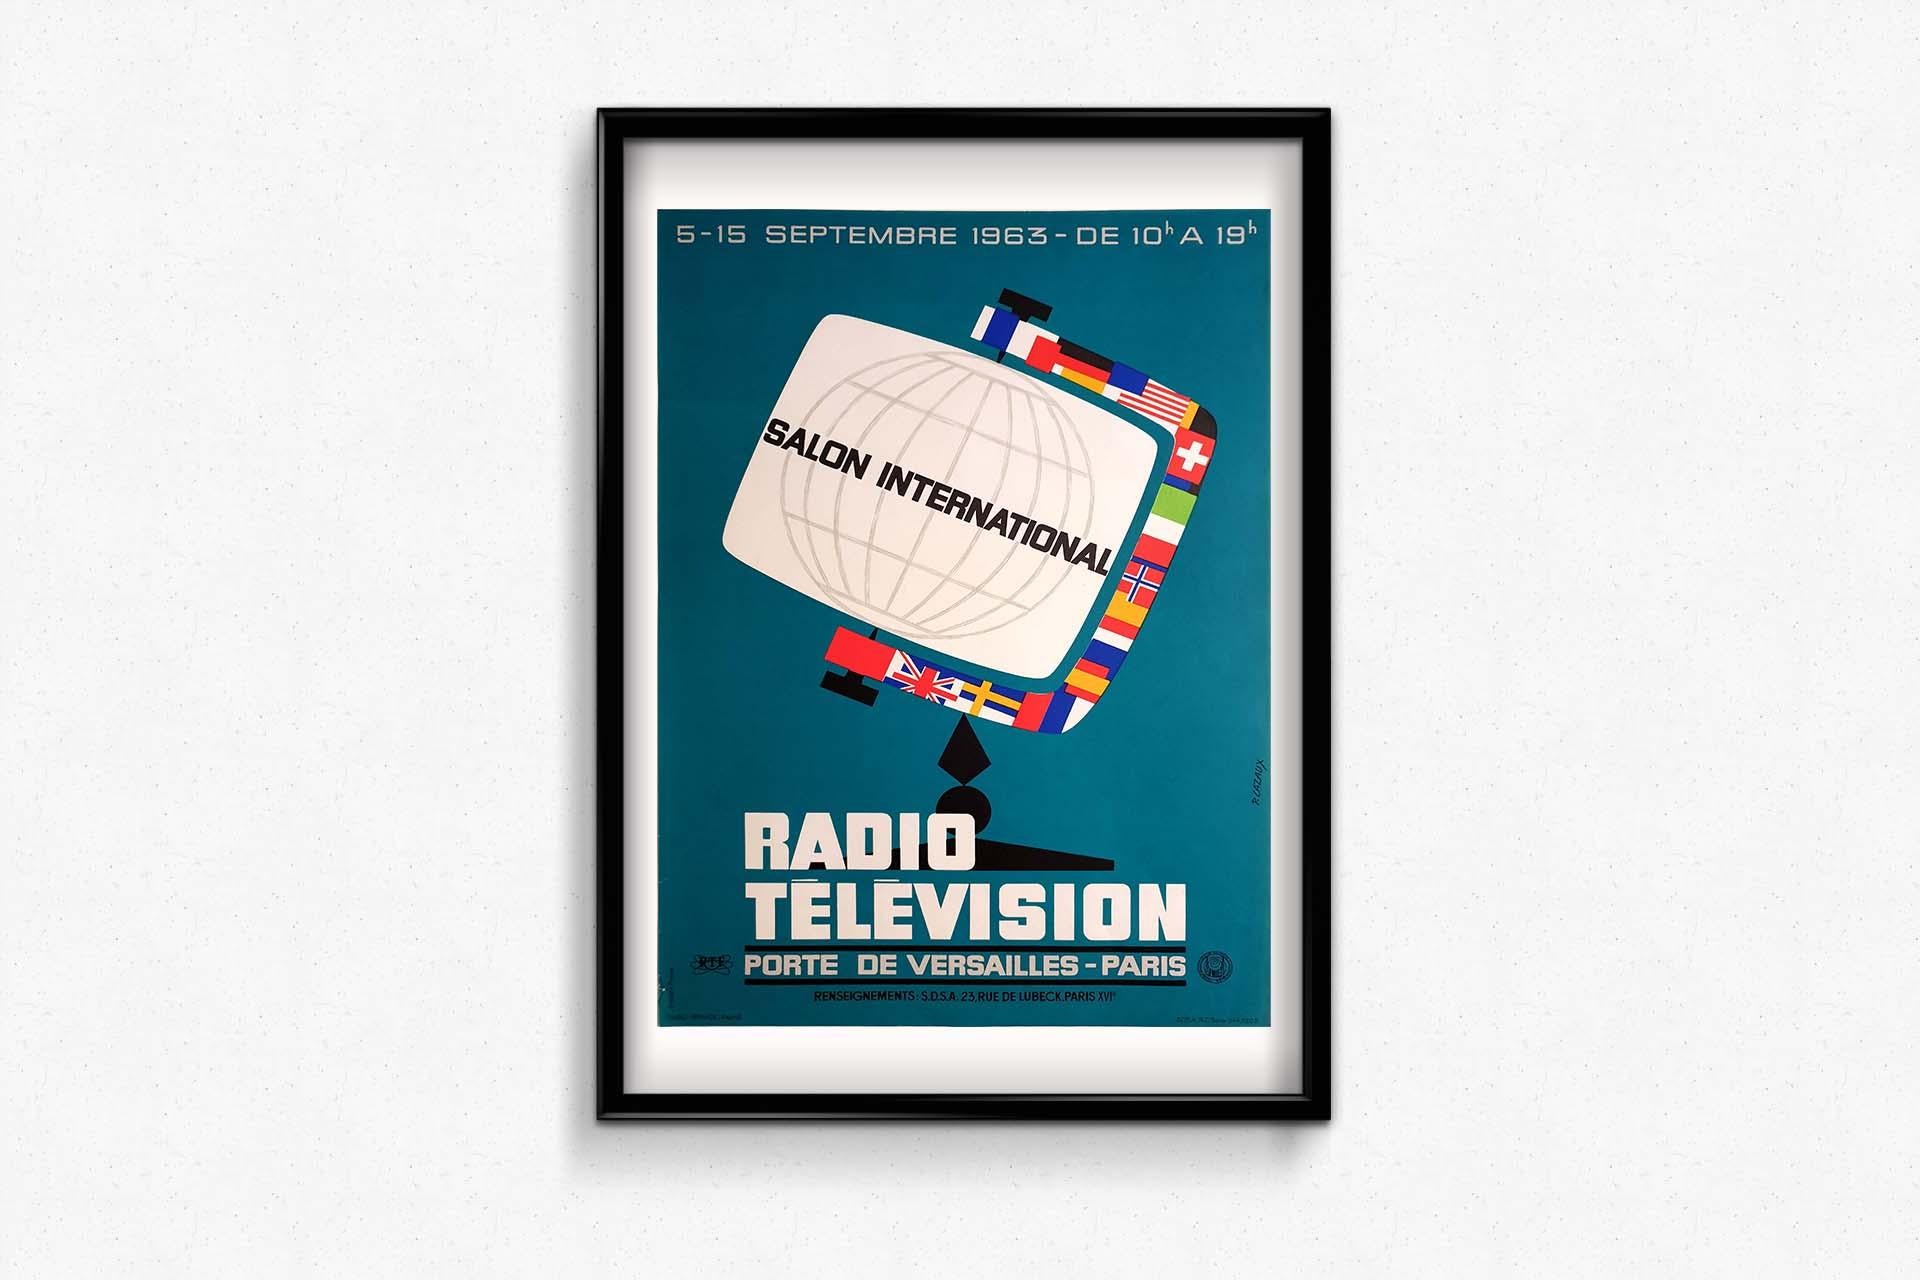 P. L'affiche originale du Salon international de la radio-télévision, réalisée par P. Cazaux en 1963, est une représentation emblématique de l'évolution rapide des technologies de la communication. Cette affiche, créée pour promouvoir le Salon